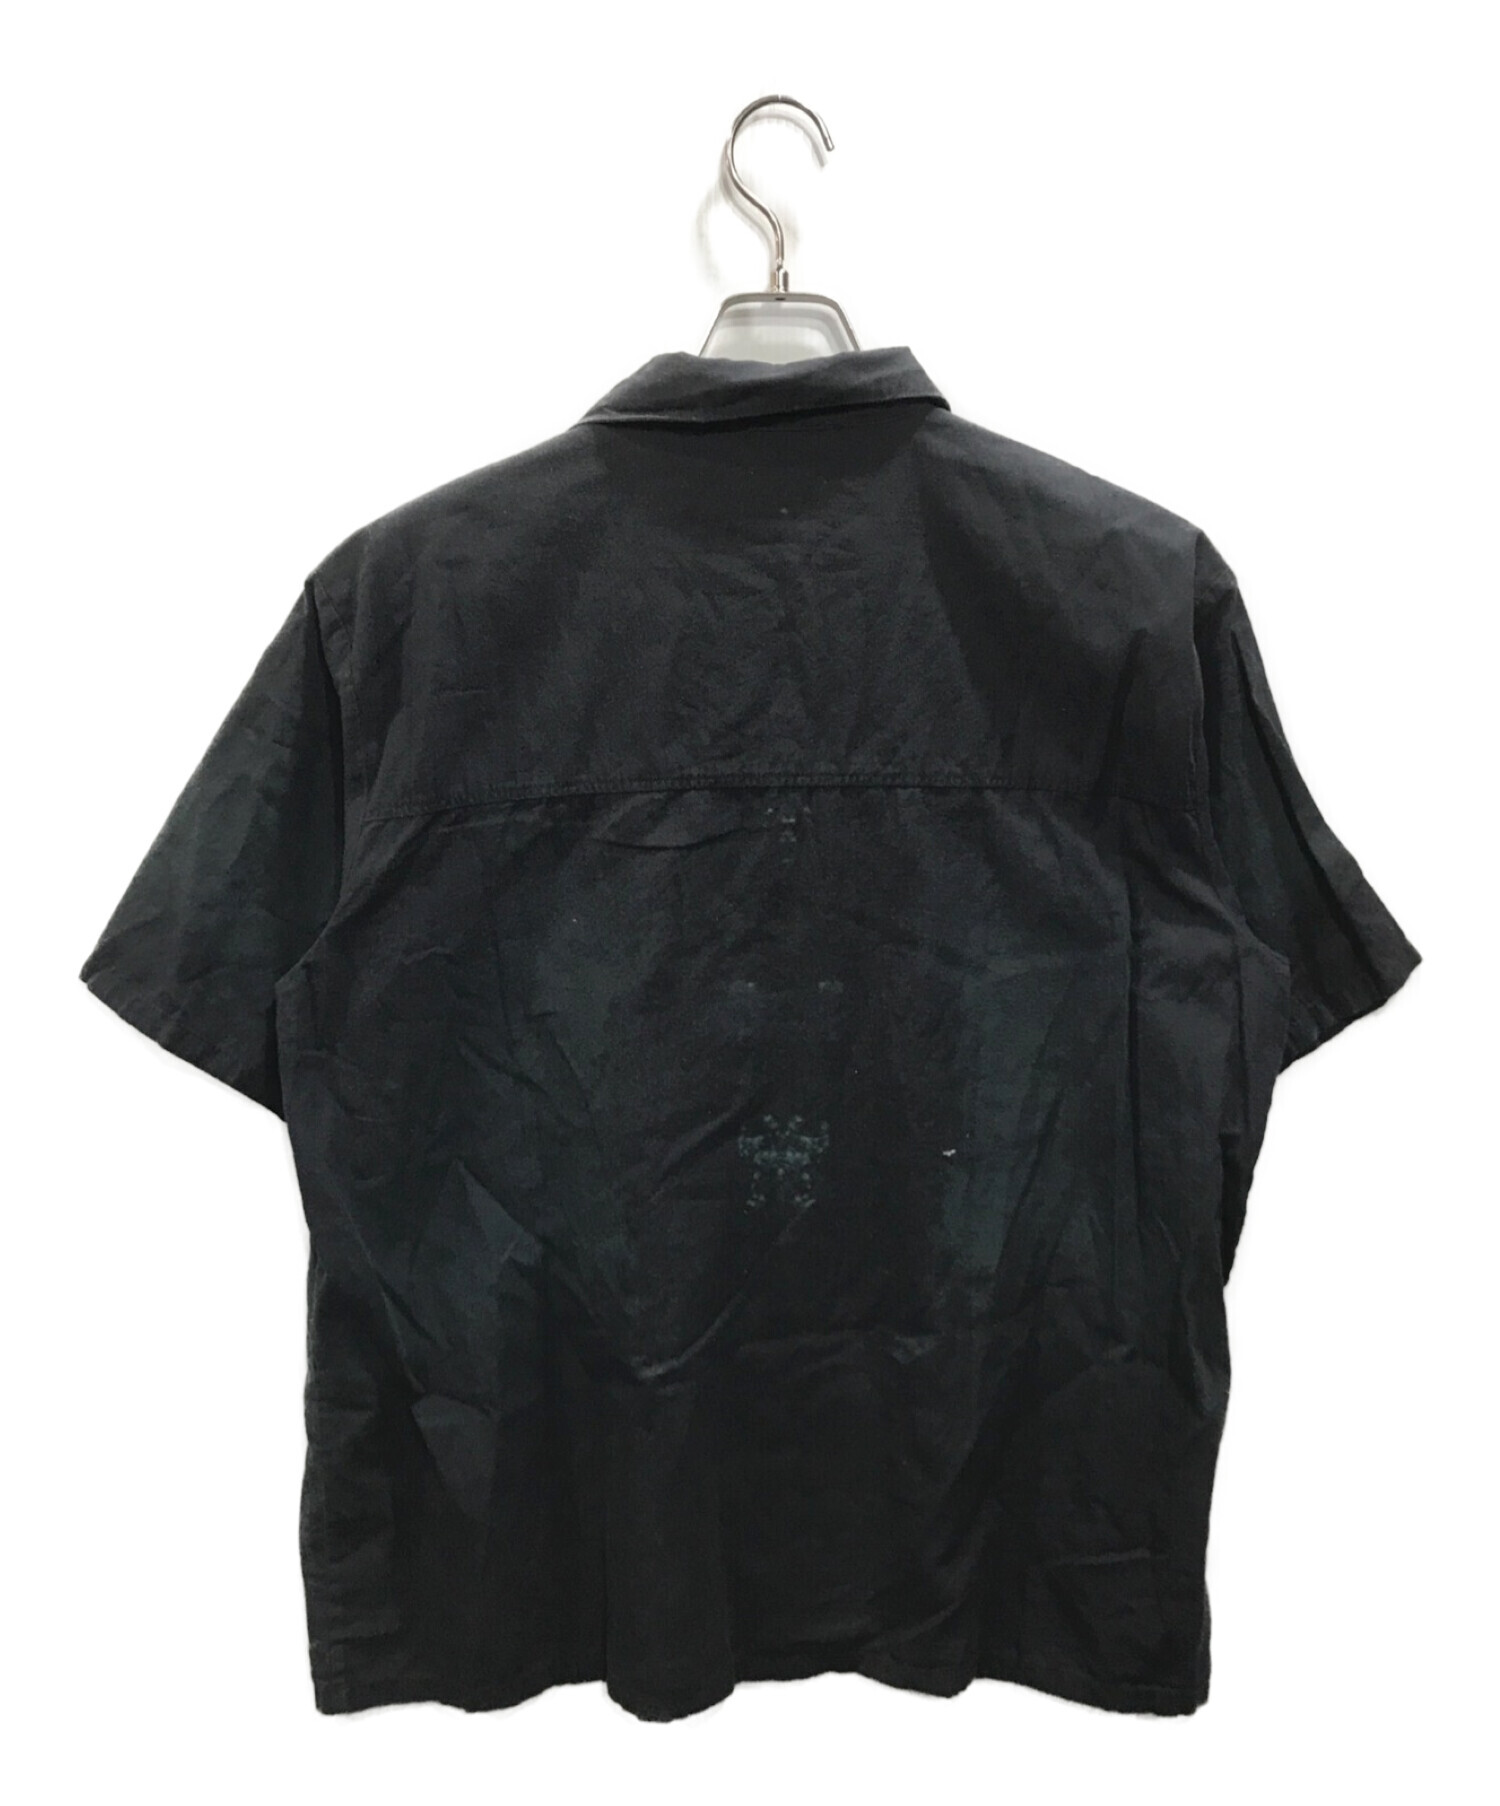 DROPDEAD (ドロップデッド) CRADLE OF FILTH (クレイドル・オブ・フィルス) オープンカラーシャツ ブラック サイズ:XL